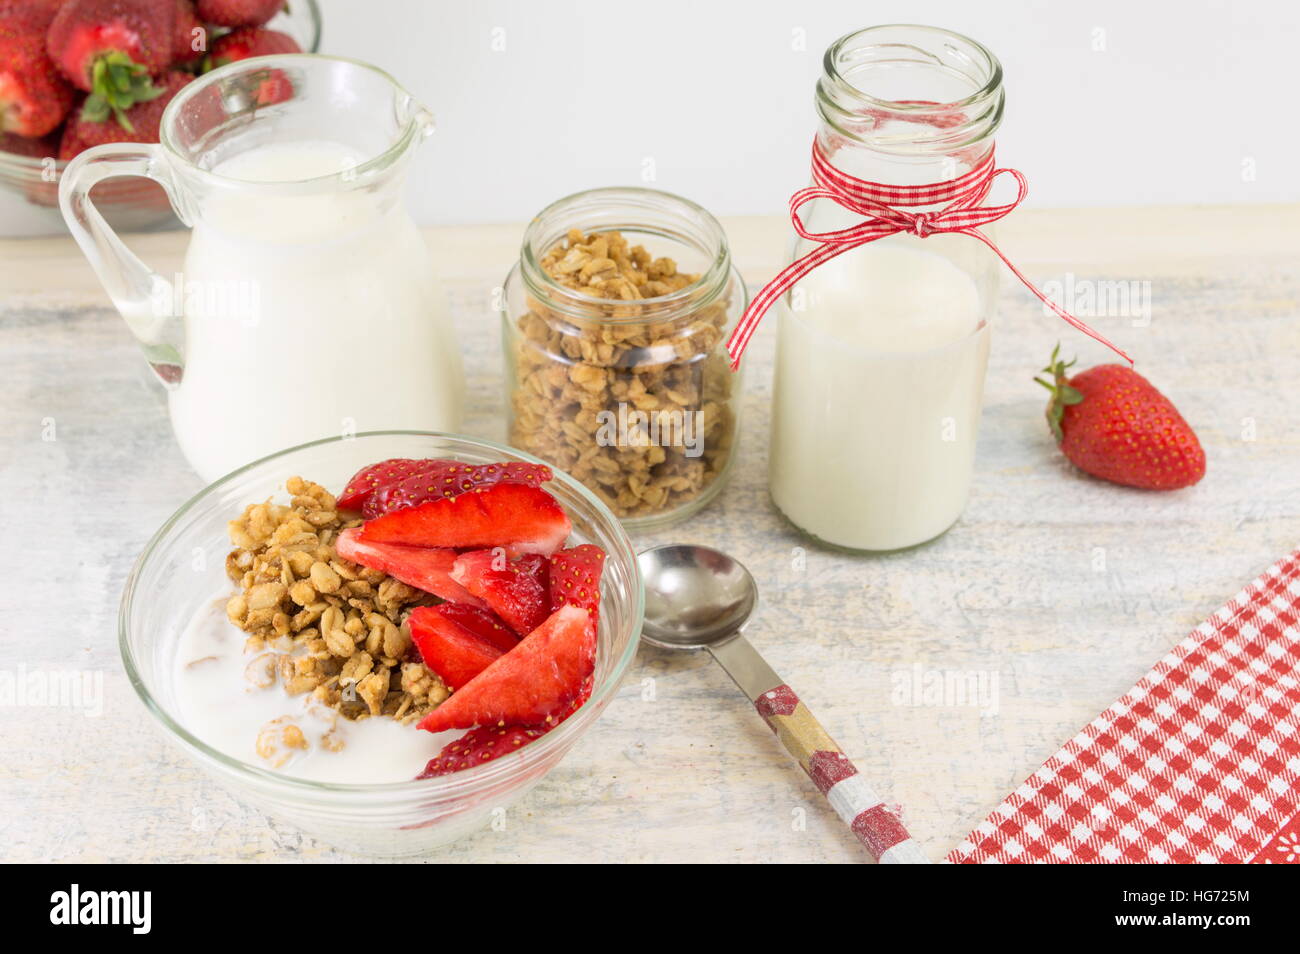 Granola, de fraises fraîches et de lait. Les ingrédients du petit-déjeuner sain Banque D'Images